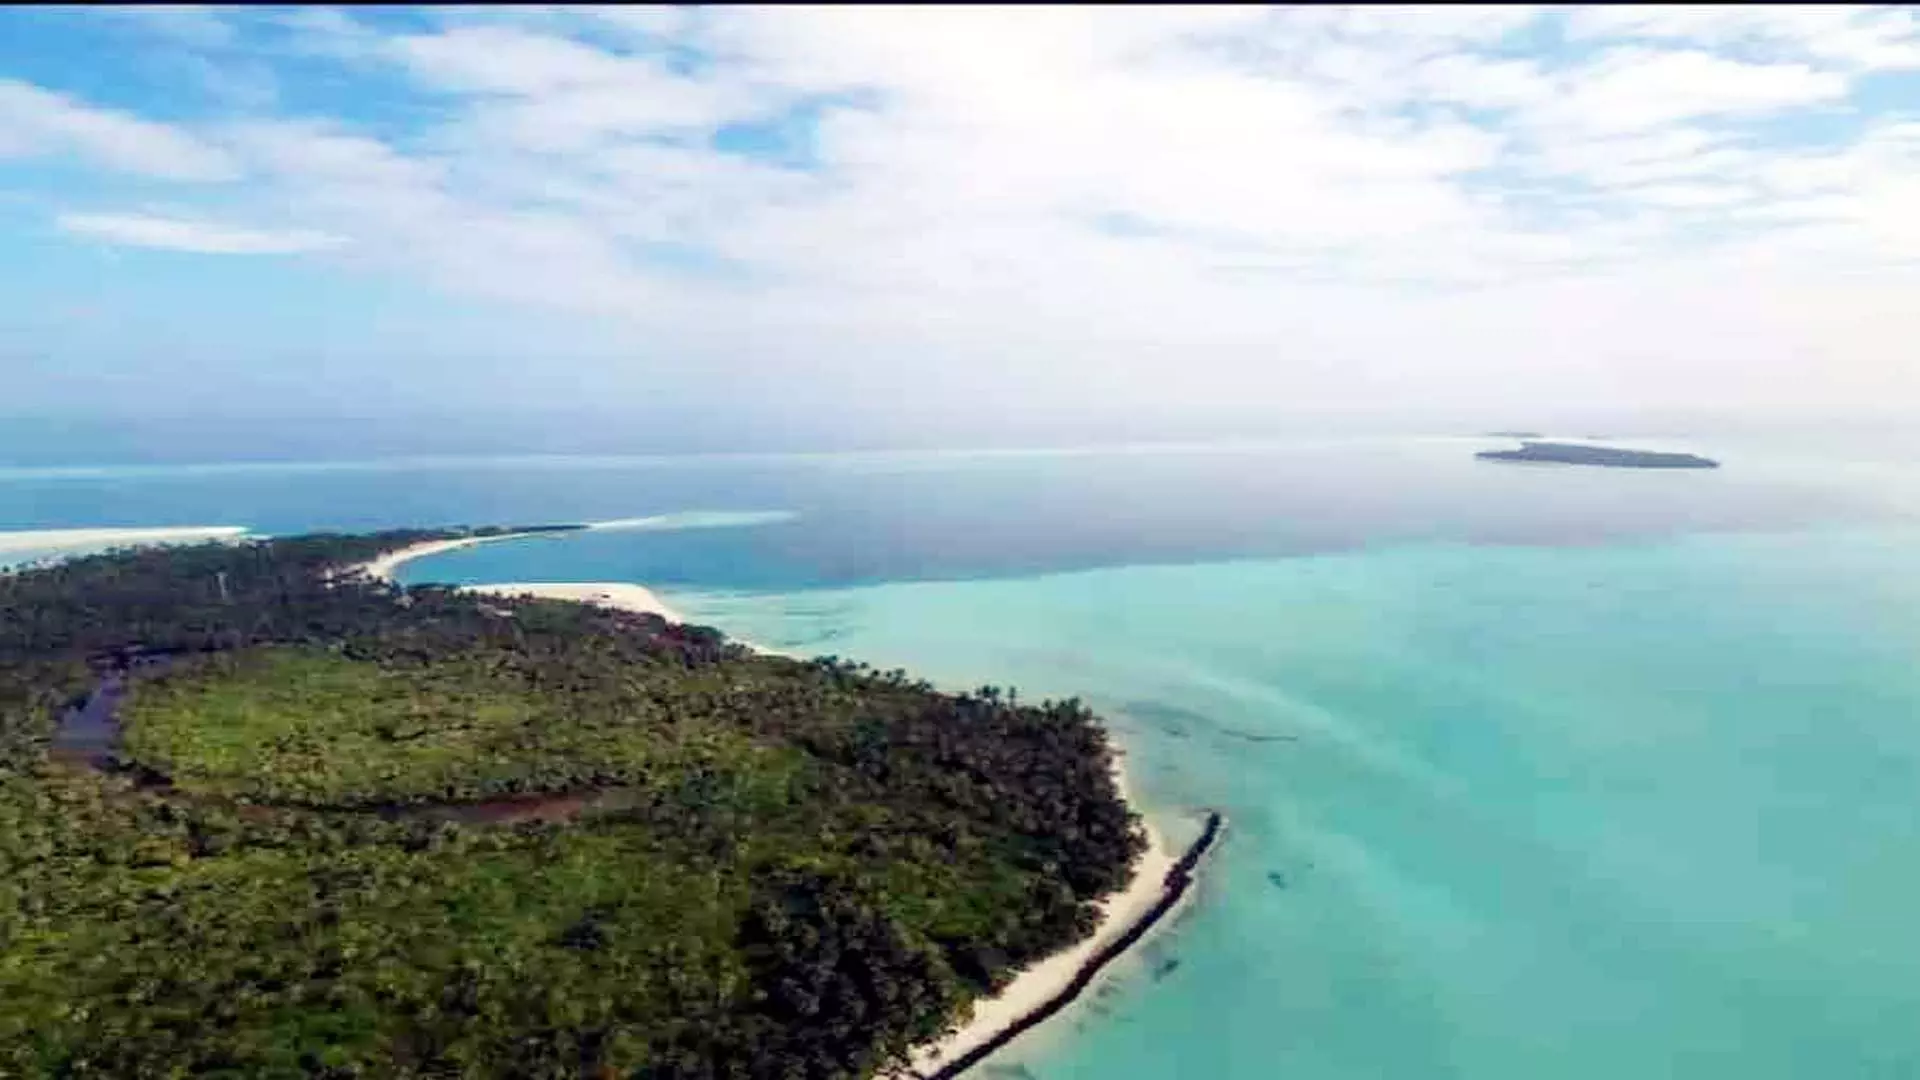 पर्यटन मंत्रालय लक्षद्वीप, घरेलू द्वीपों और कम ज्ञात स्थलों को बढ़ावा देने पर ध्यान केंद्रित करेगा